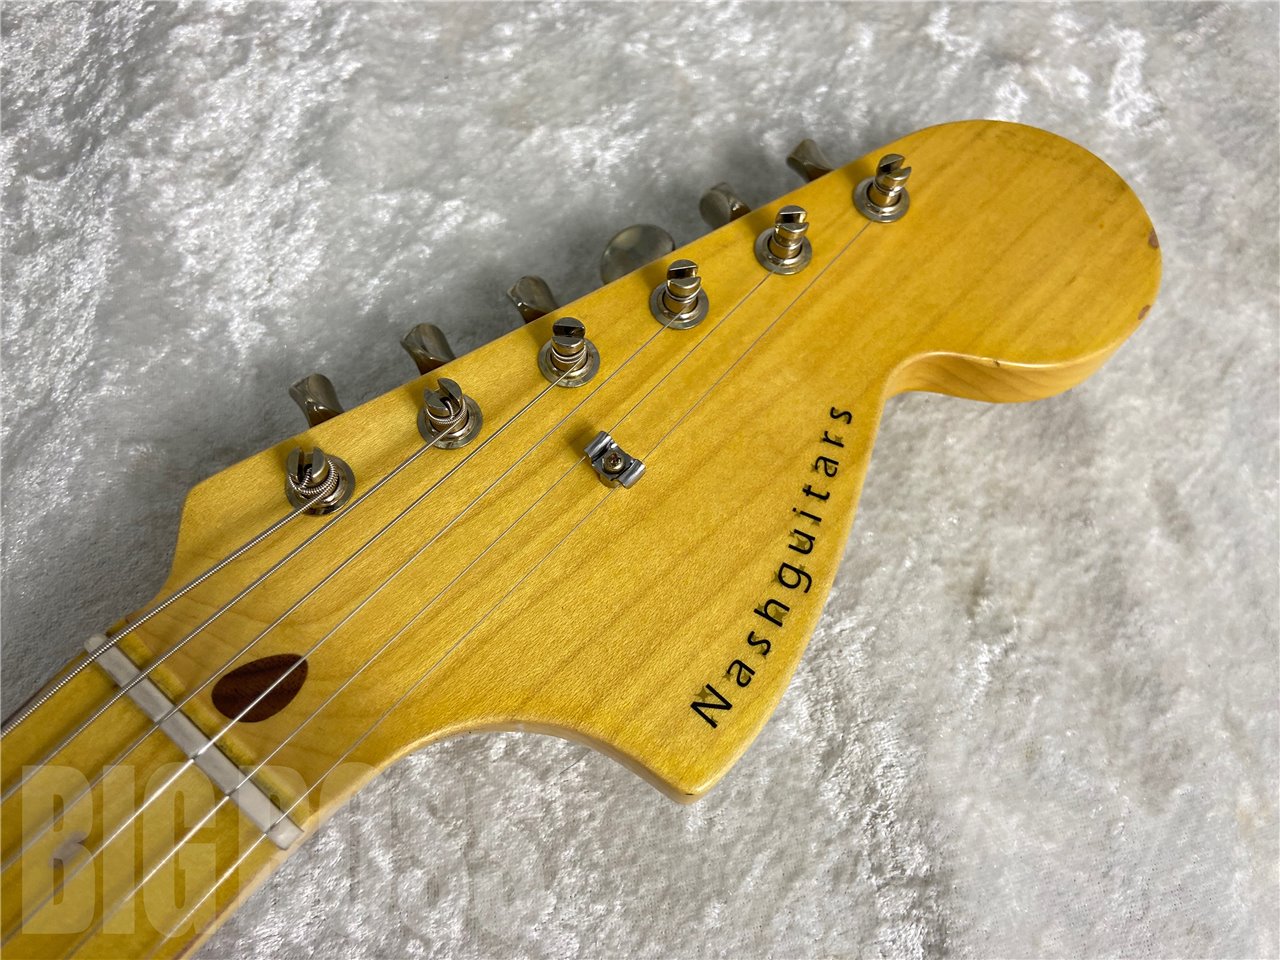 【即納可能】Nash Guitars(ナッシュギターズ) S67 Olympic White #AM763 駅前別館